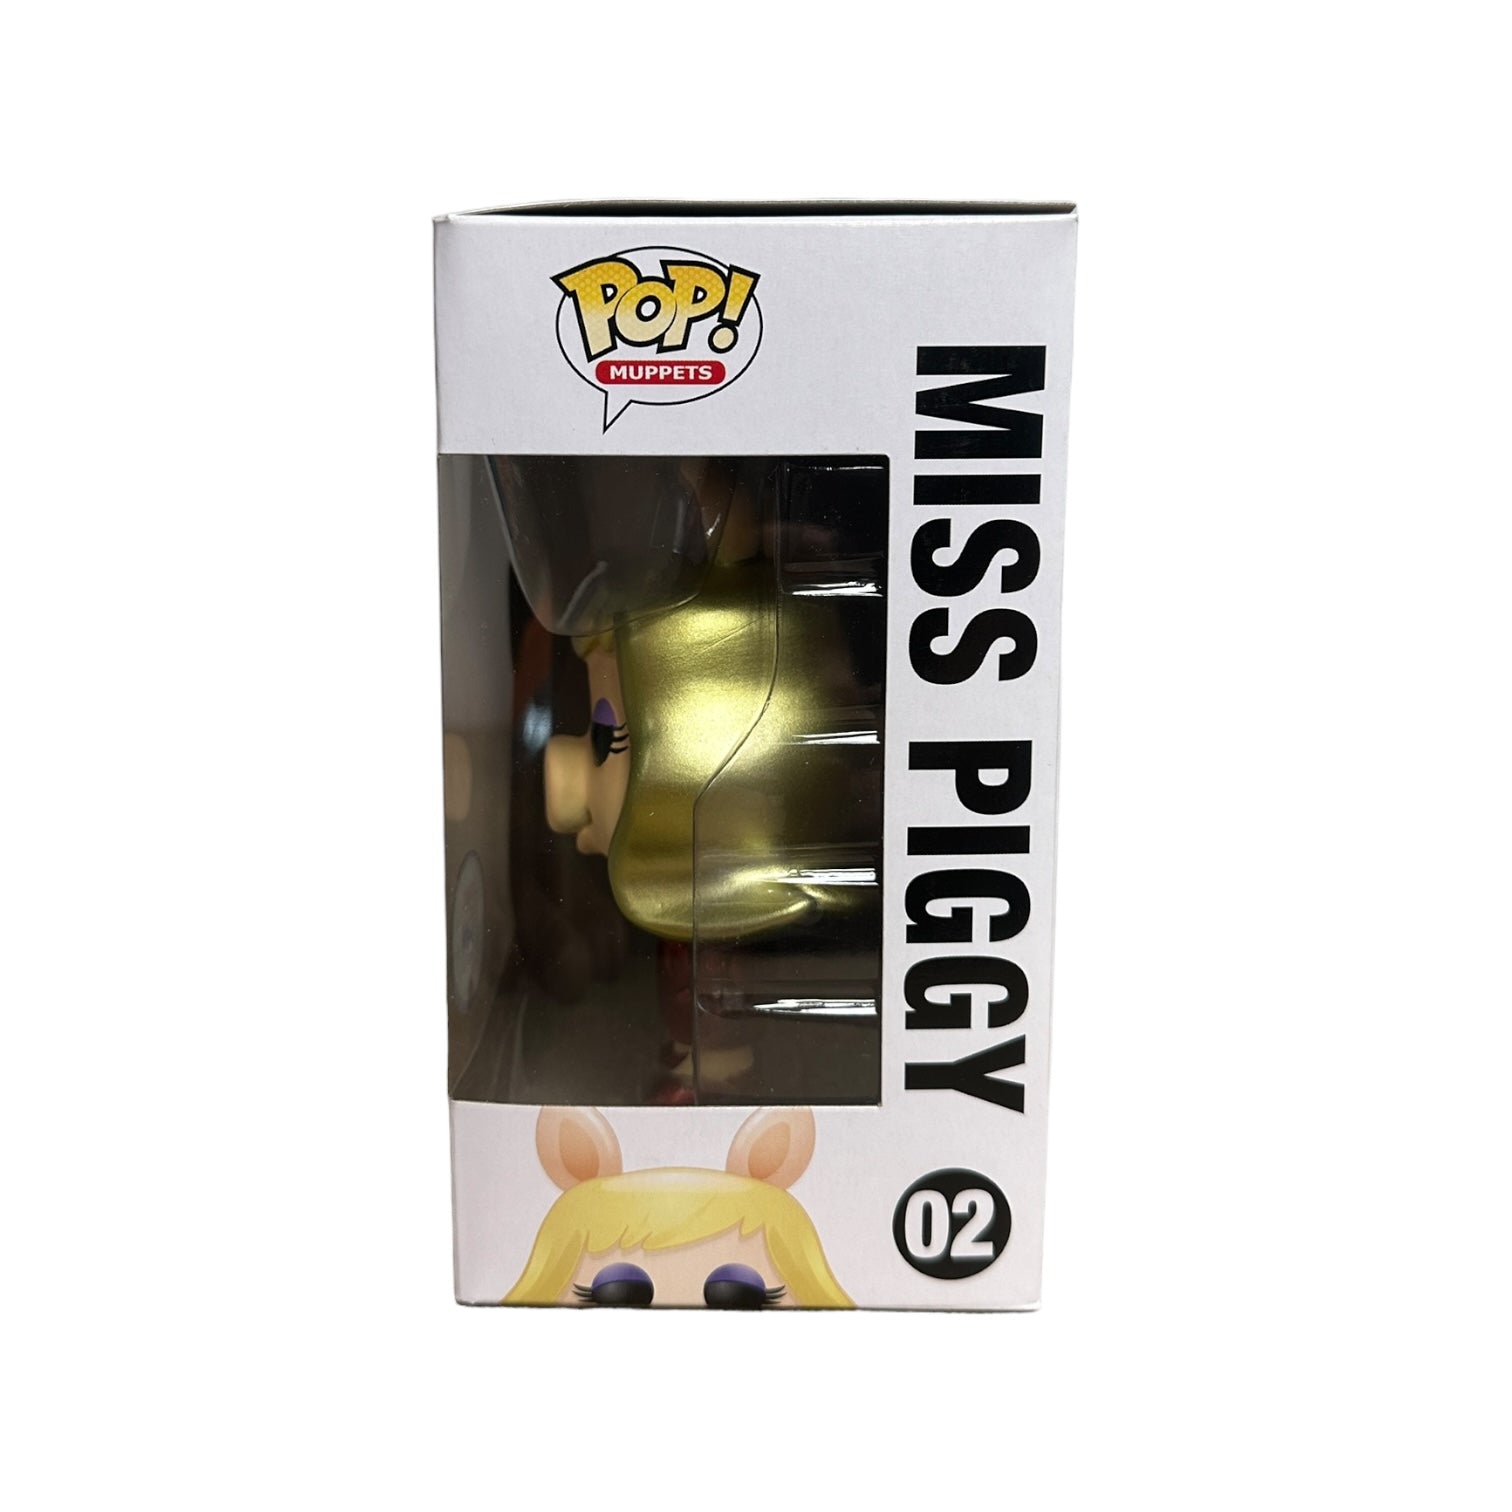 Miss Piggy #02 (Metallic) Funko Pop! - The Muppets - SDCC 2013 Exclusive LE480 Pcs - Condition 8.5/10